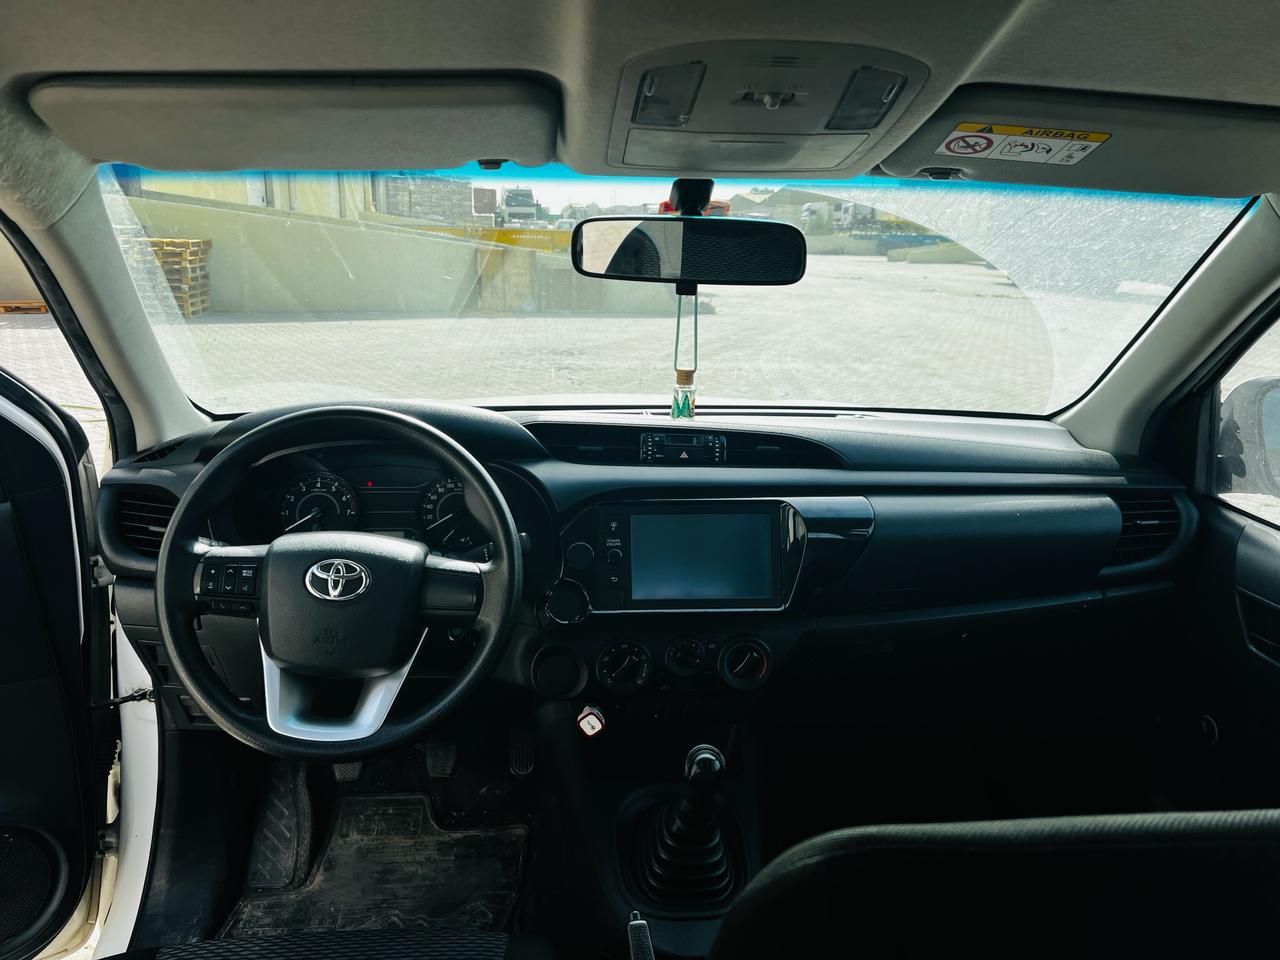 Toyota Hilux Cabin door 6 seat